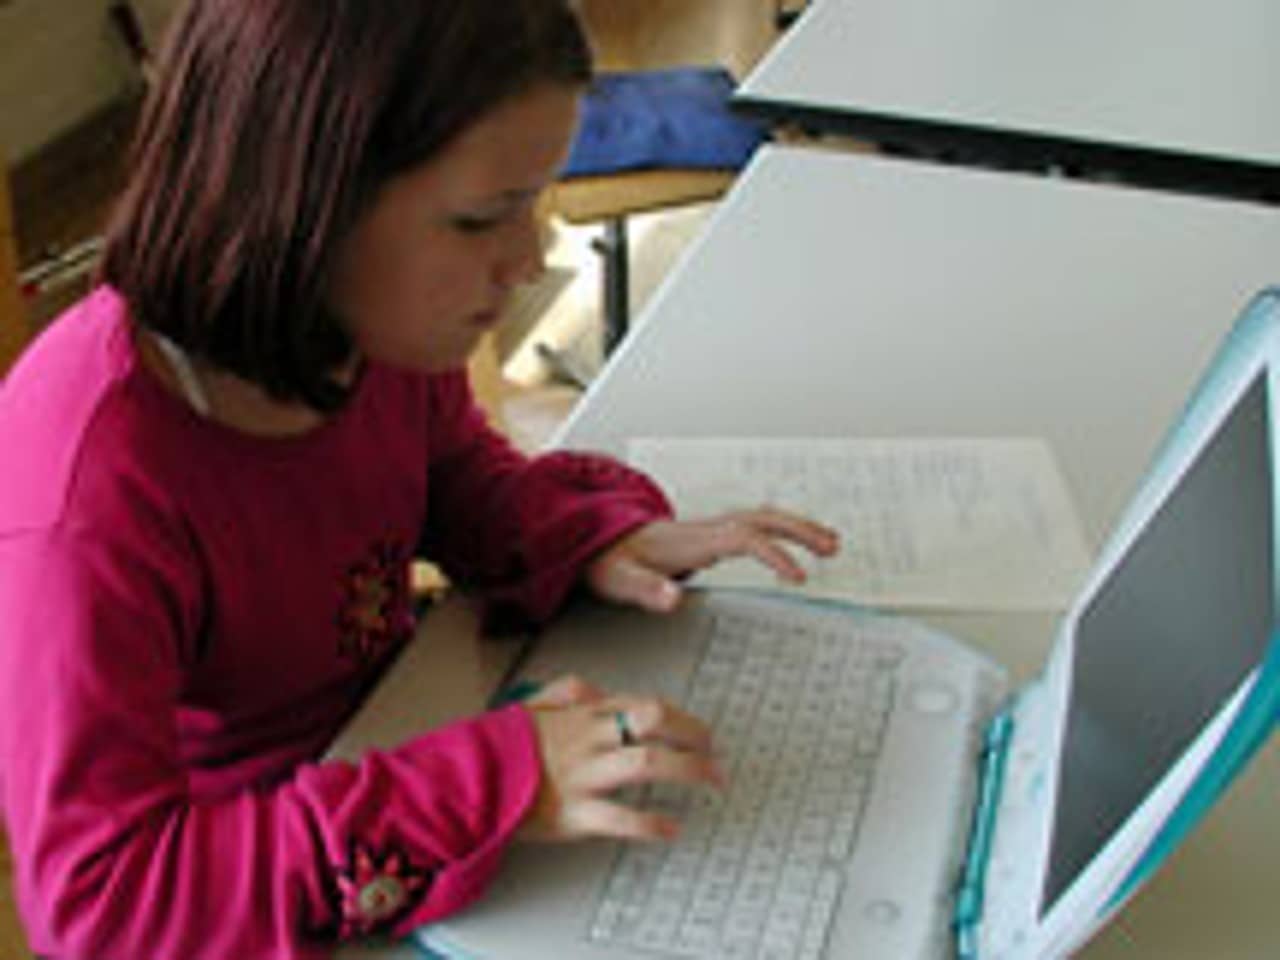 Mädchen schreibt auf Laptop